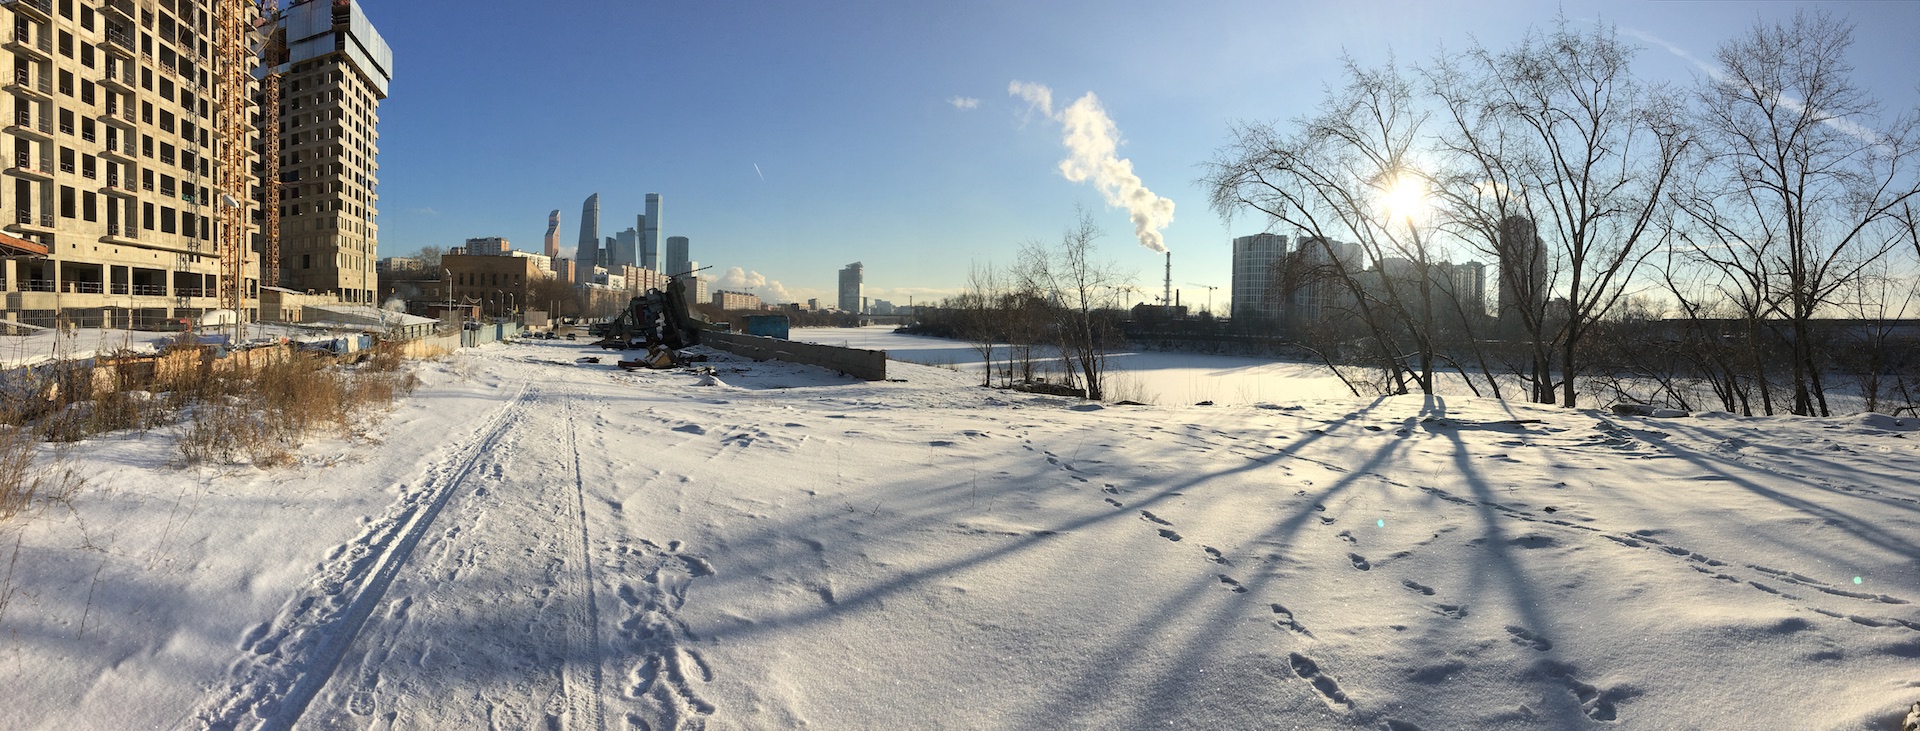 Вид из ЖК "Сердце столицы" на Шелепихинскую набережную Москвы реки